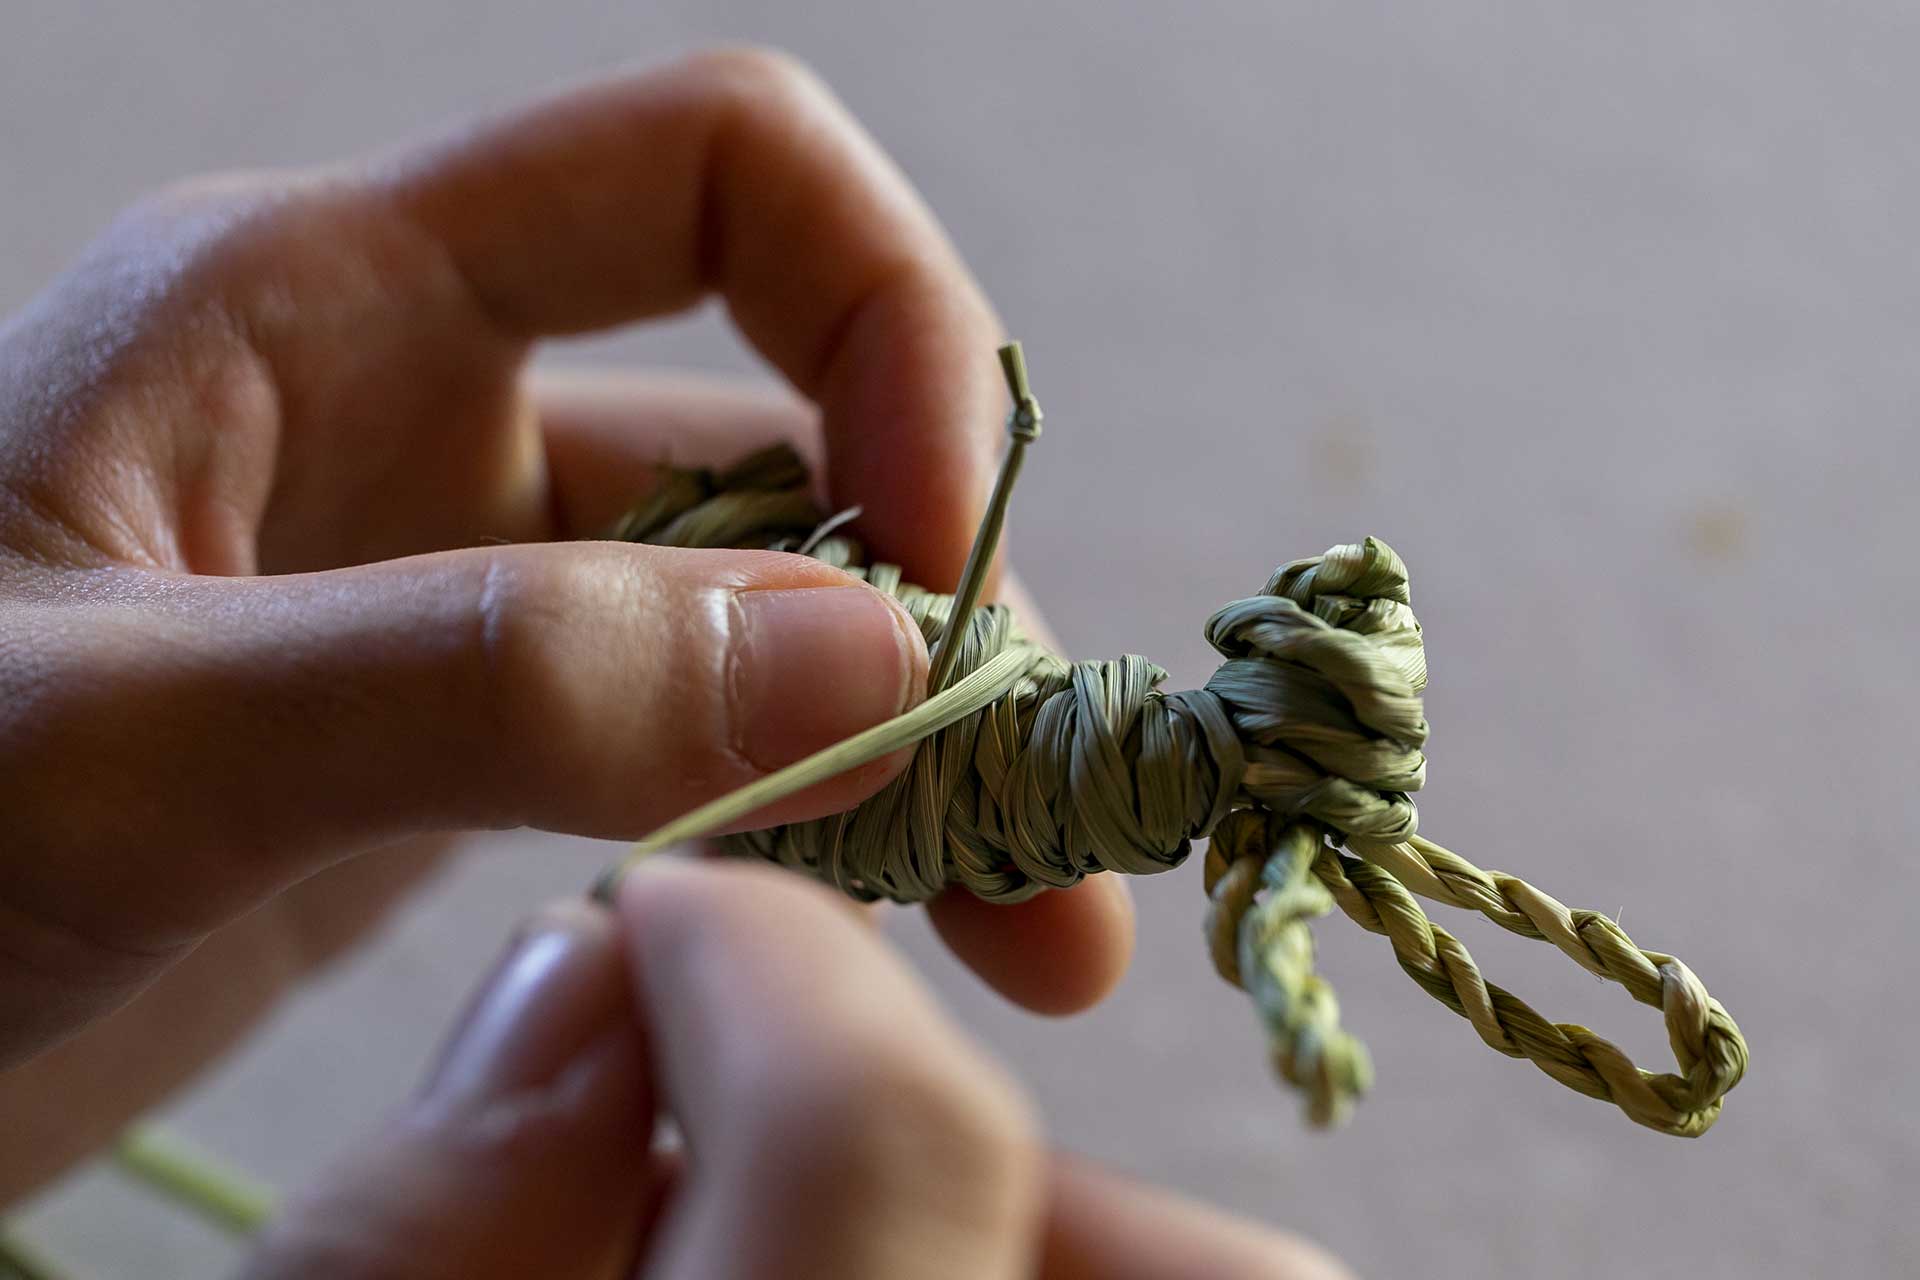 藁を固結びし、手を作る。くるっと巻いて藁の下を通す。同様に２箇所固結びを作り、脚を作る。